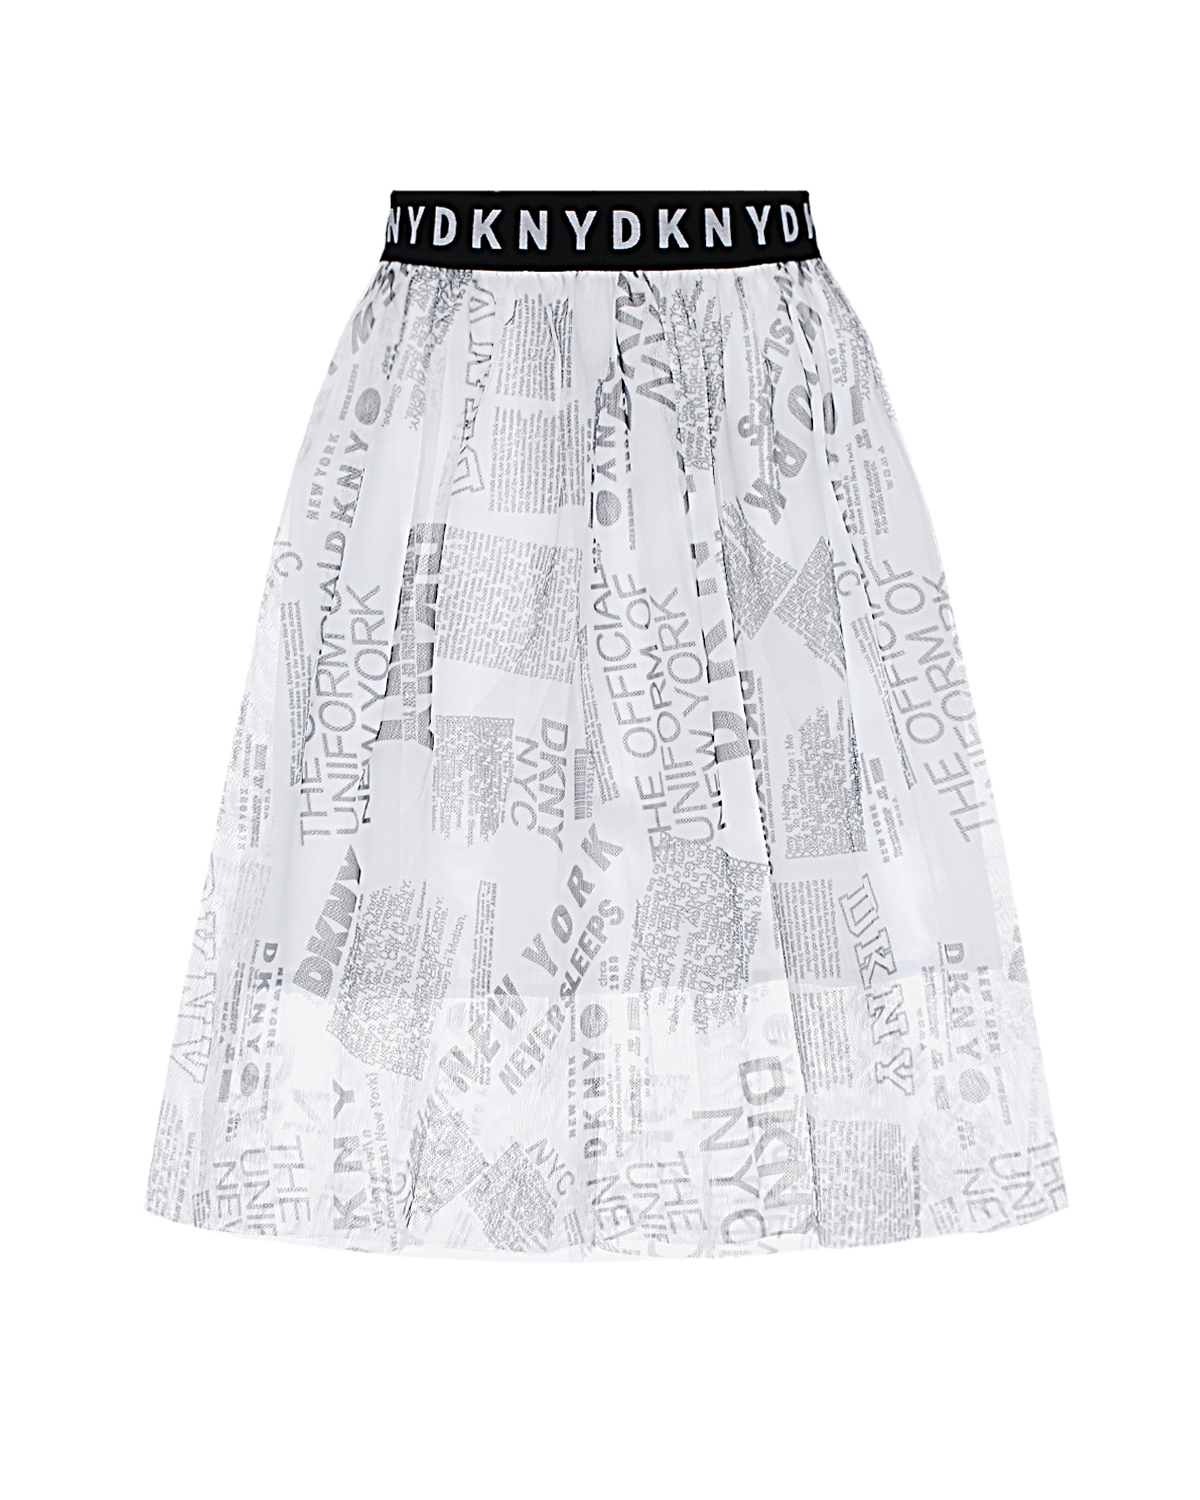 Юбка со сплошным принтом DKNY детская, размер 140, цвет белый - фото 1